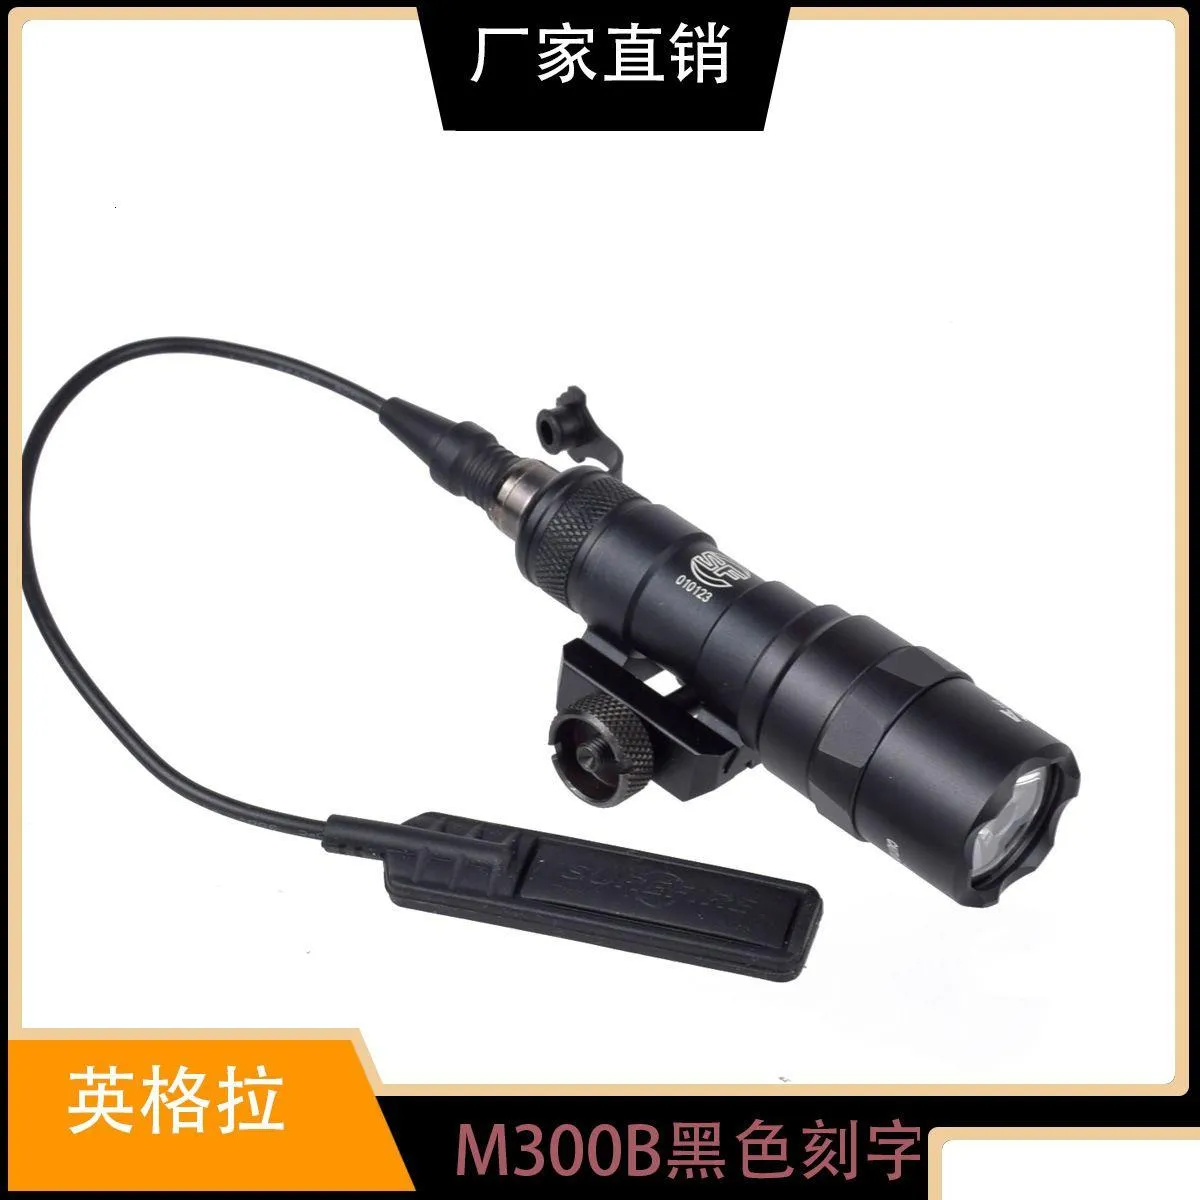 懐中電灯トーチSurefir Tactical Flashlight M600 M600Cデュアル関数圧力スイッチと600ルーメンHunti DHJZR